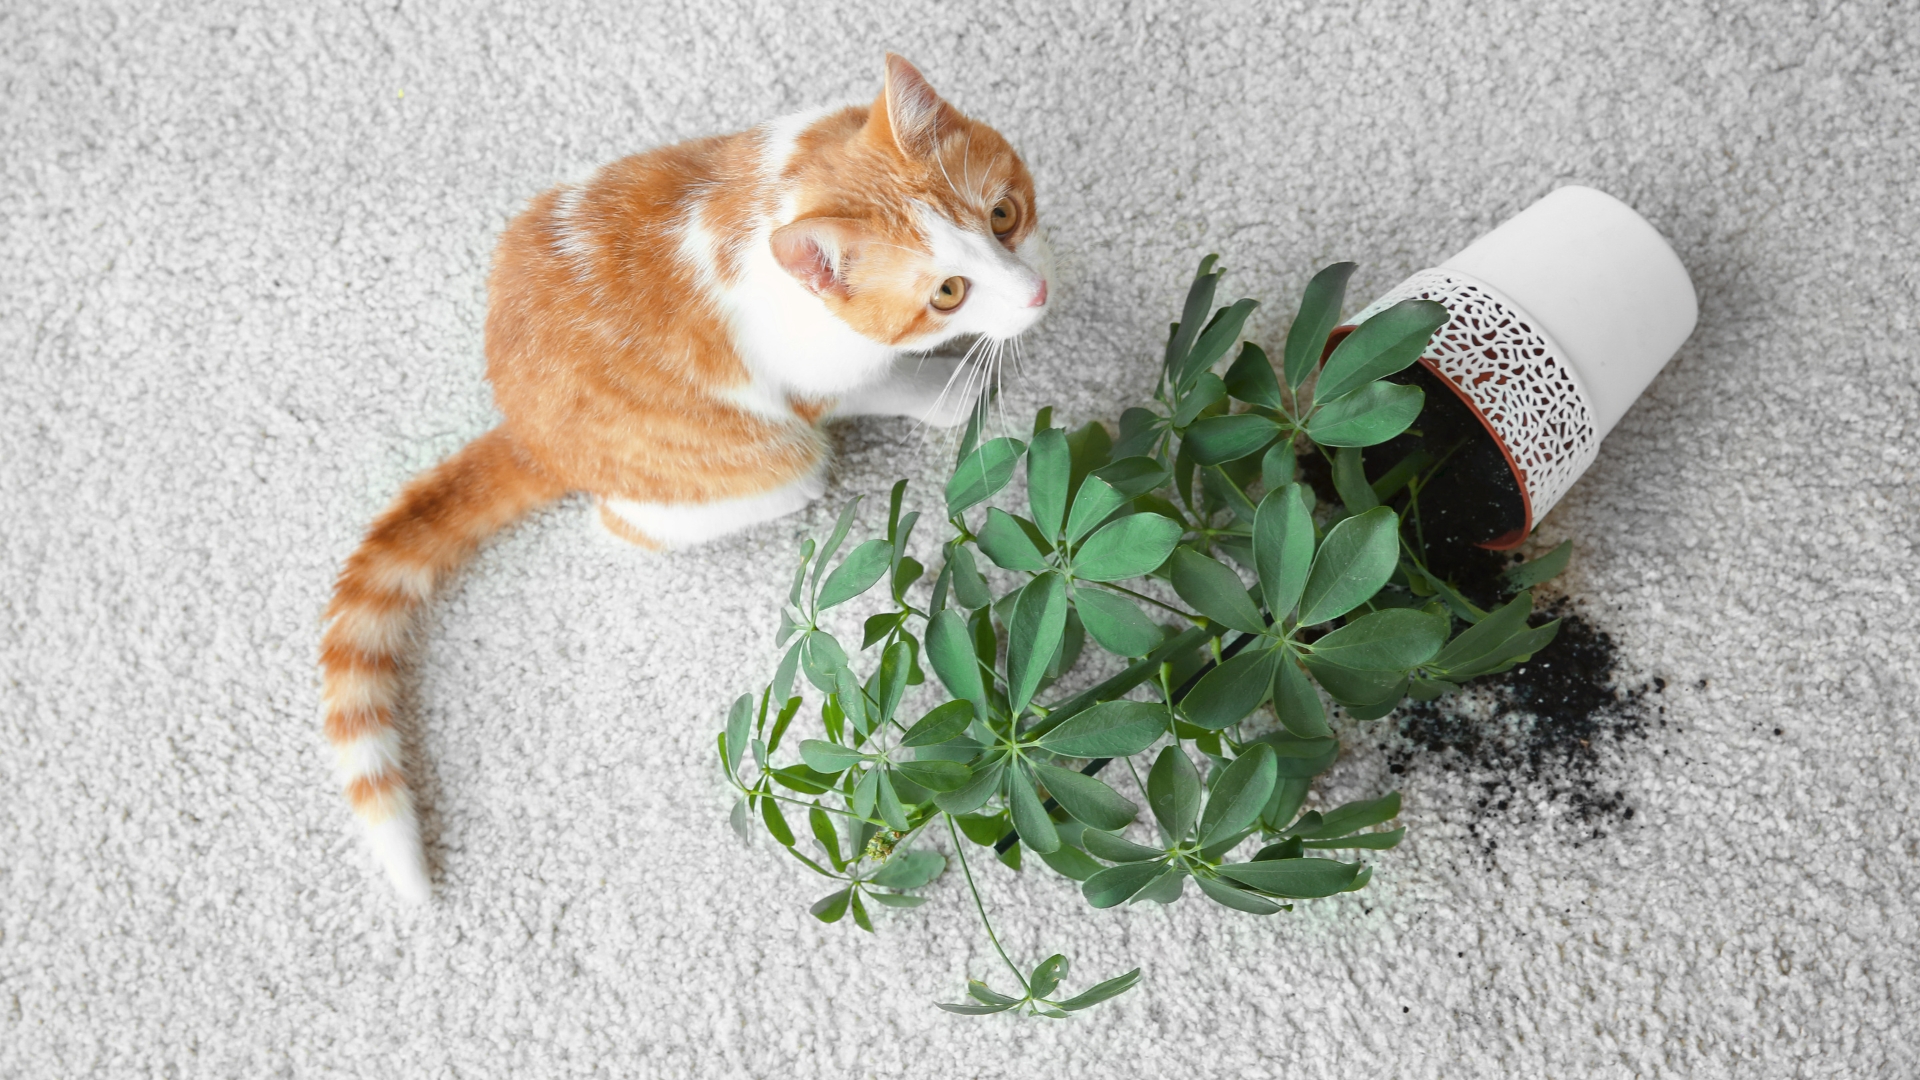 Diese Pflanzen sind für Katzen giftig